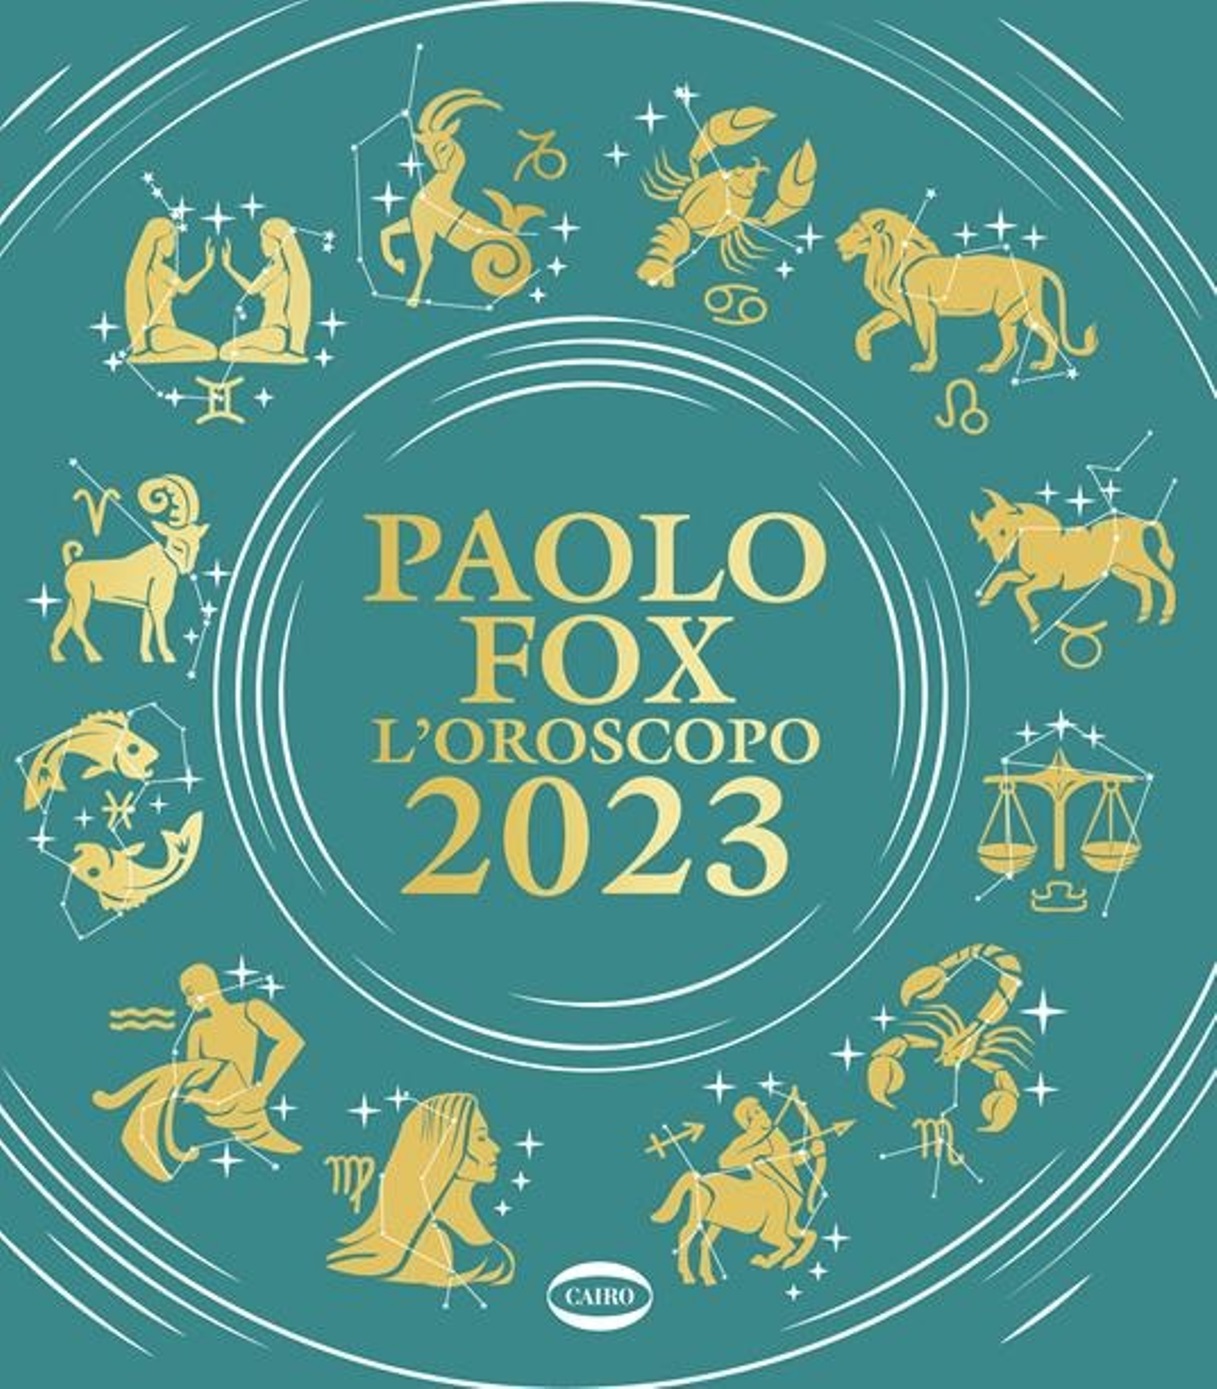 oroscopo 2023 paolo fox